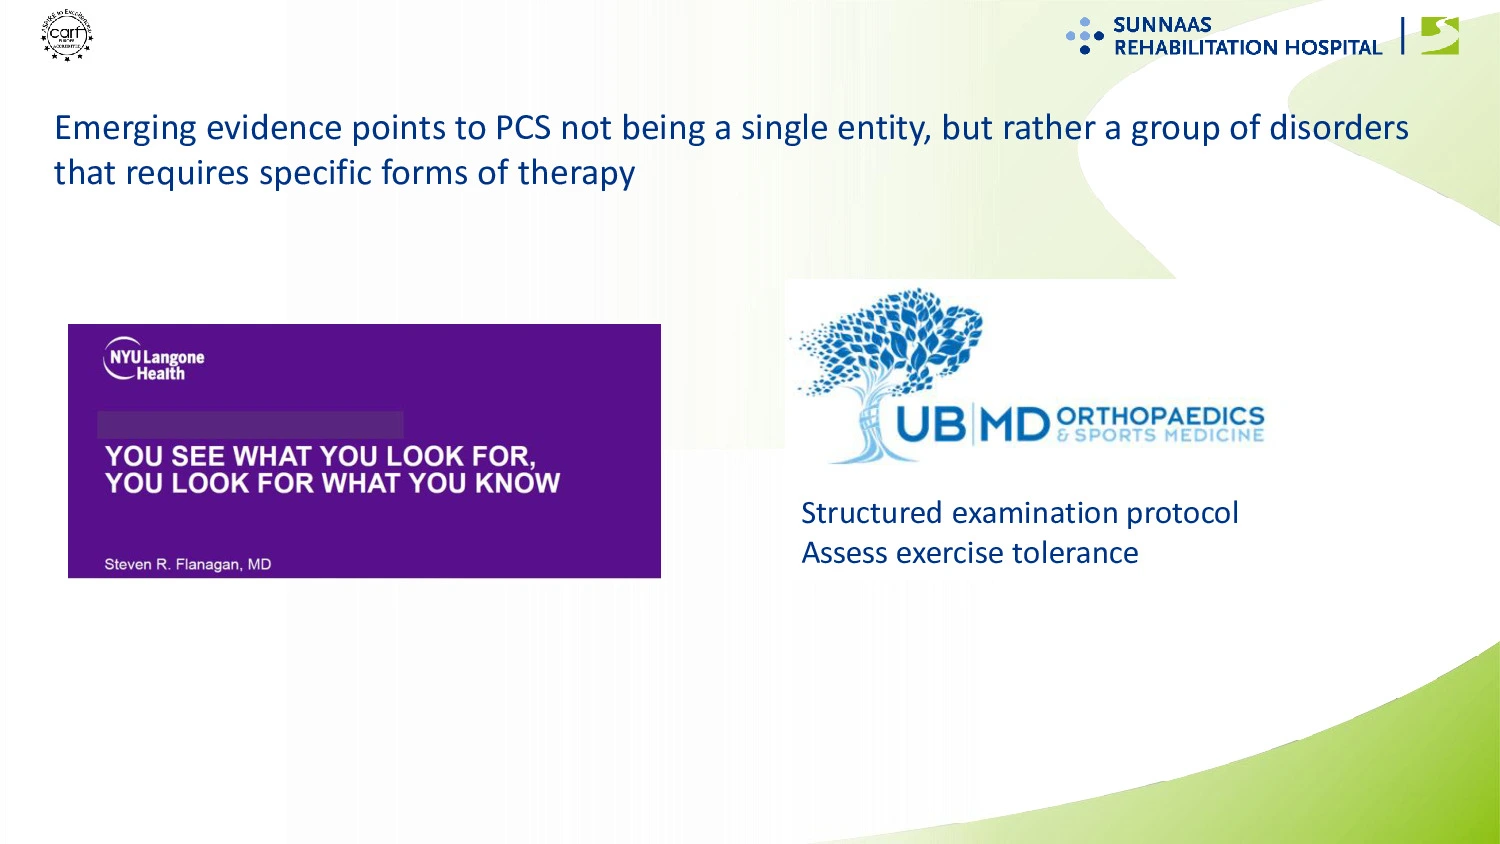 Slide der beskriver, at PCS består af en række symptomer, og ikke blot et enkelt, og at disse kræver specifikke former for behandling